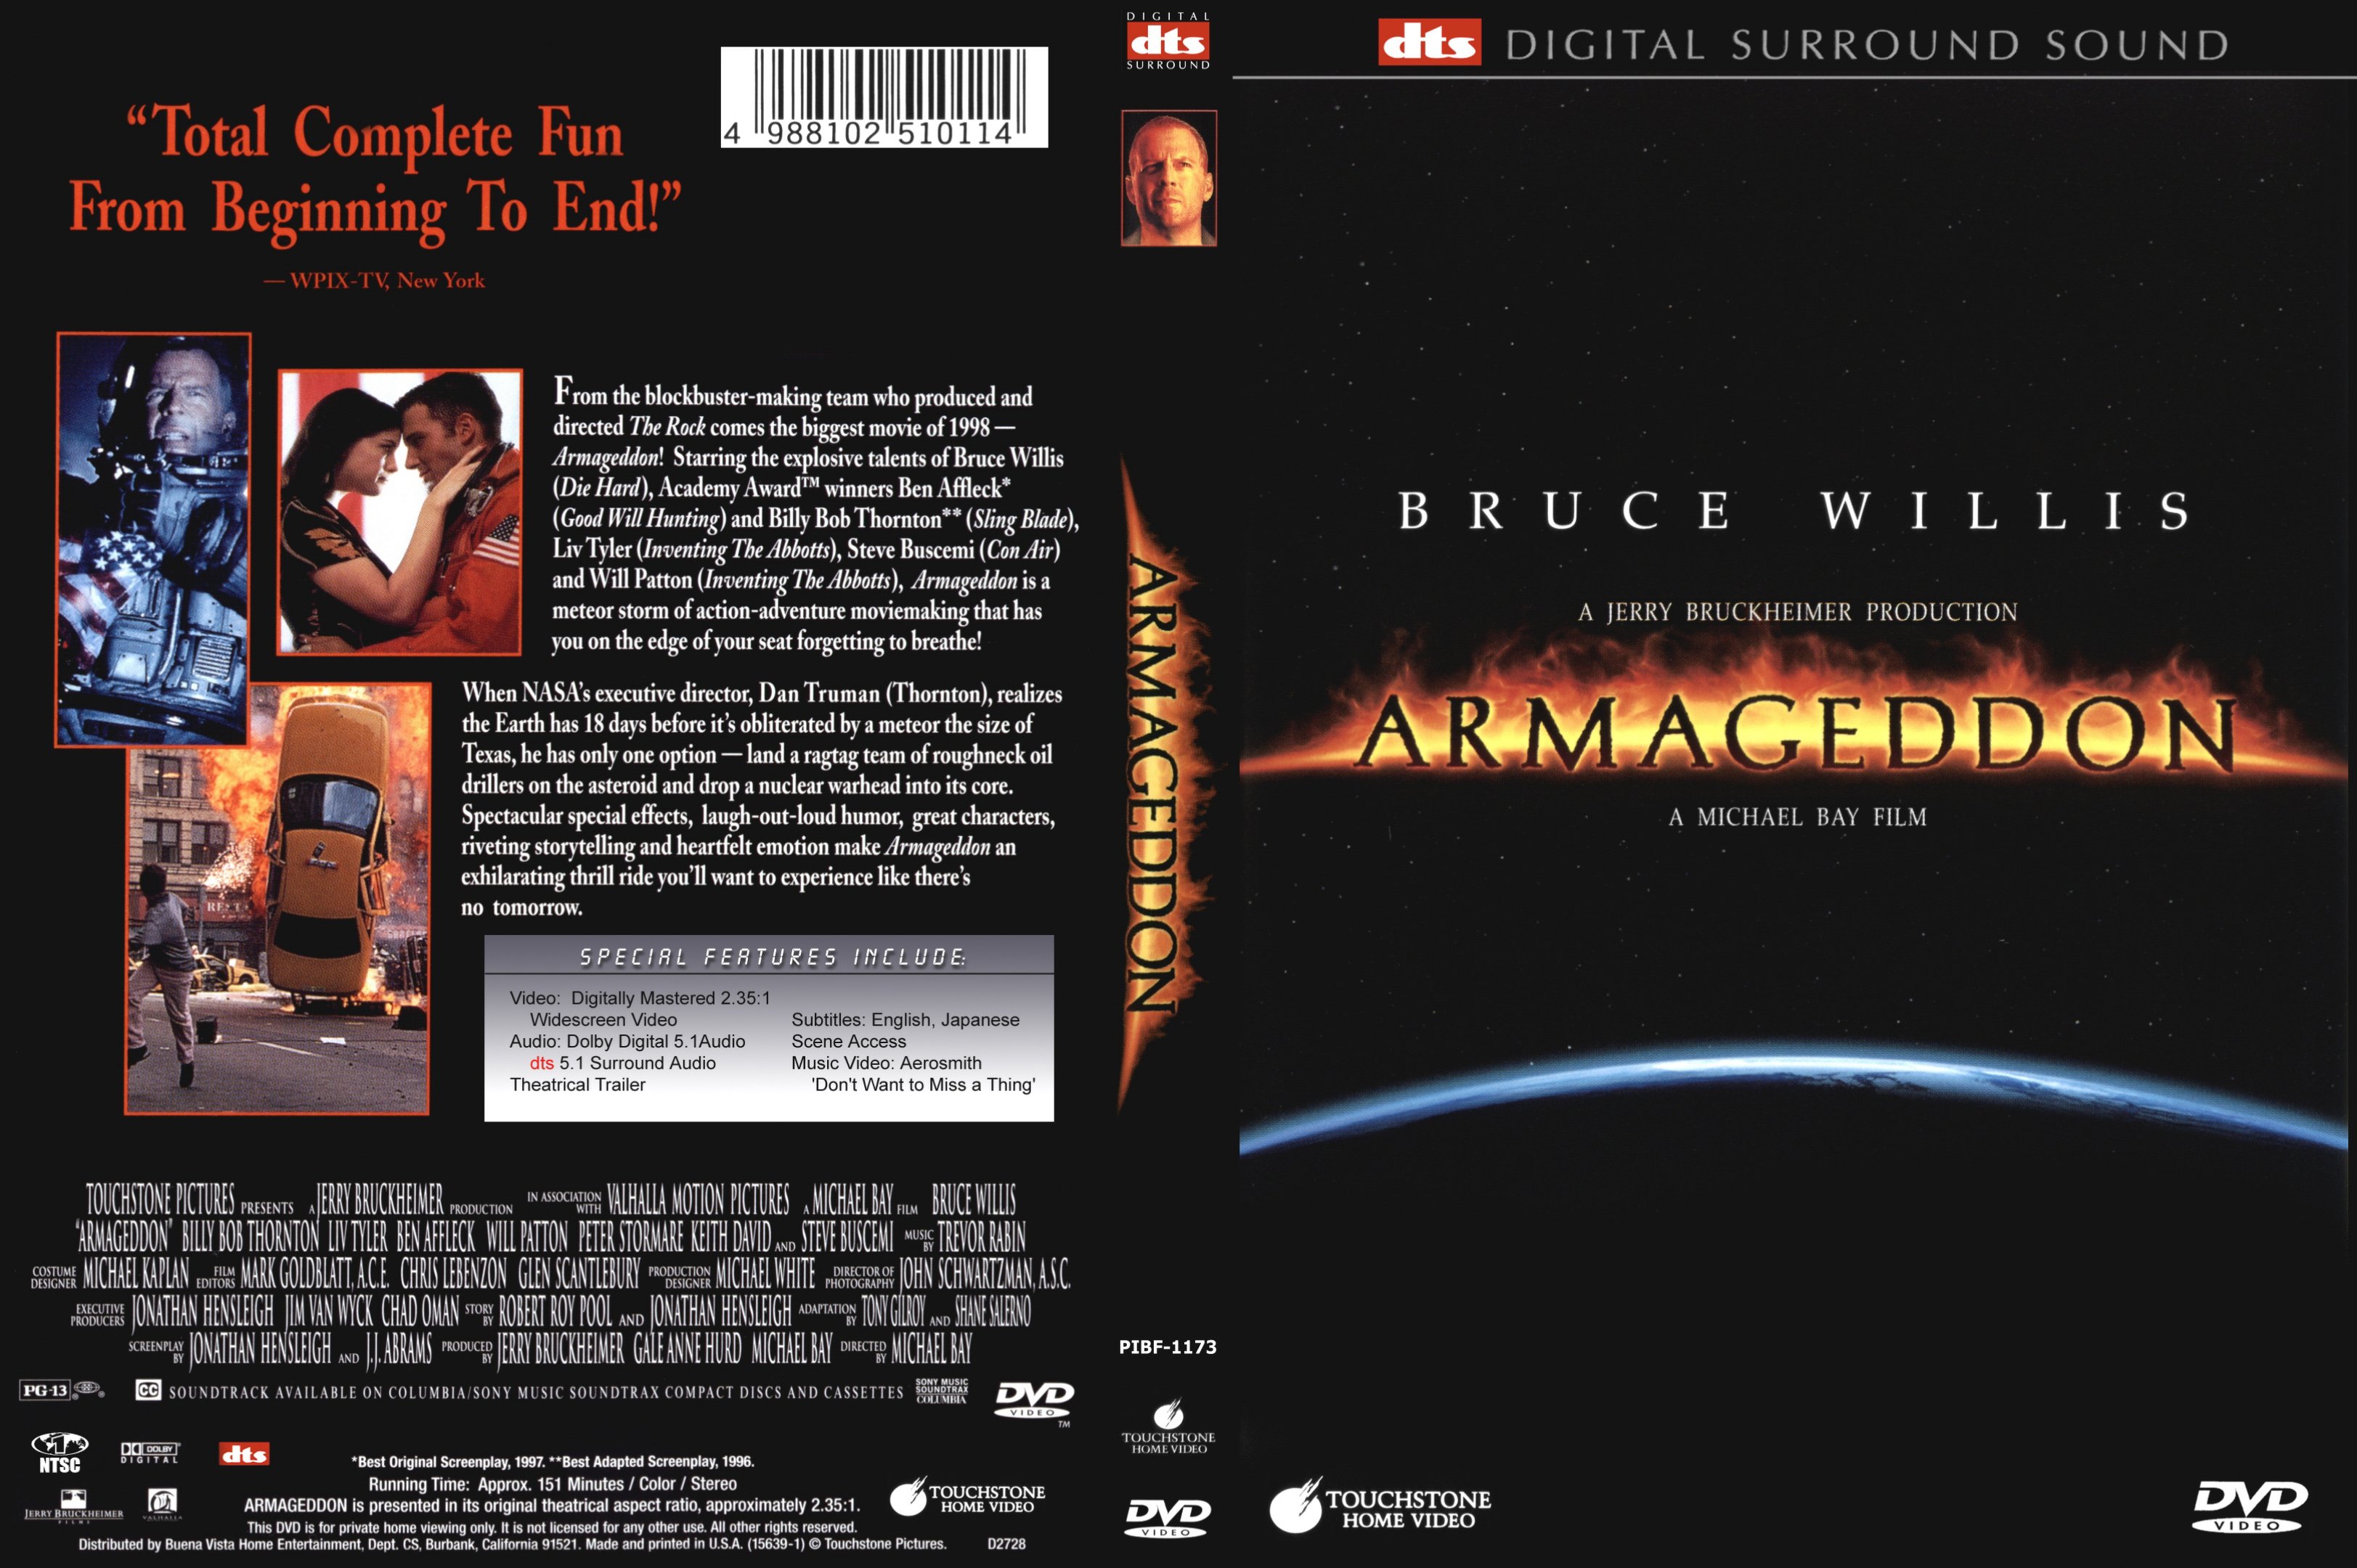 Код армагеддон. Армагеддон 1998 DVD Cover. Cover. Обложка DVD Армагеддон. 1998. Армагеддон 1998 обложка Blu ray. Armageddon 1998 DVD Cover.